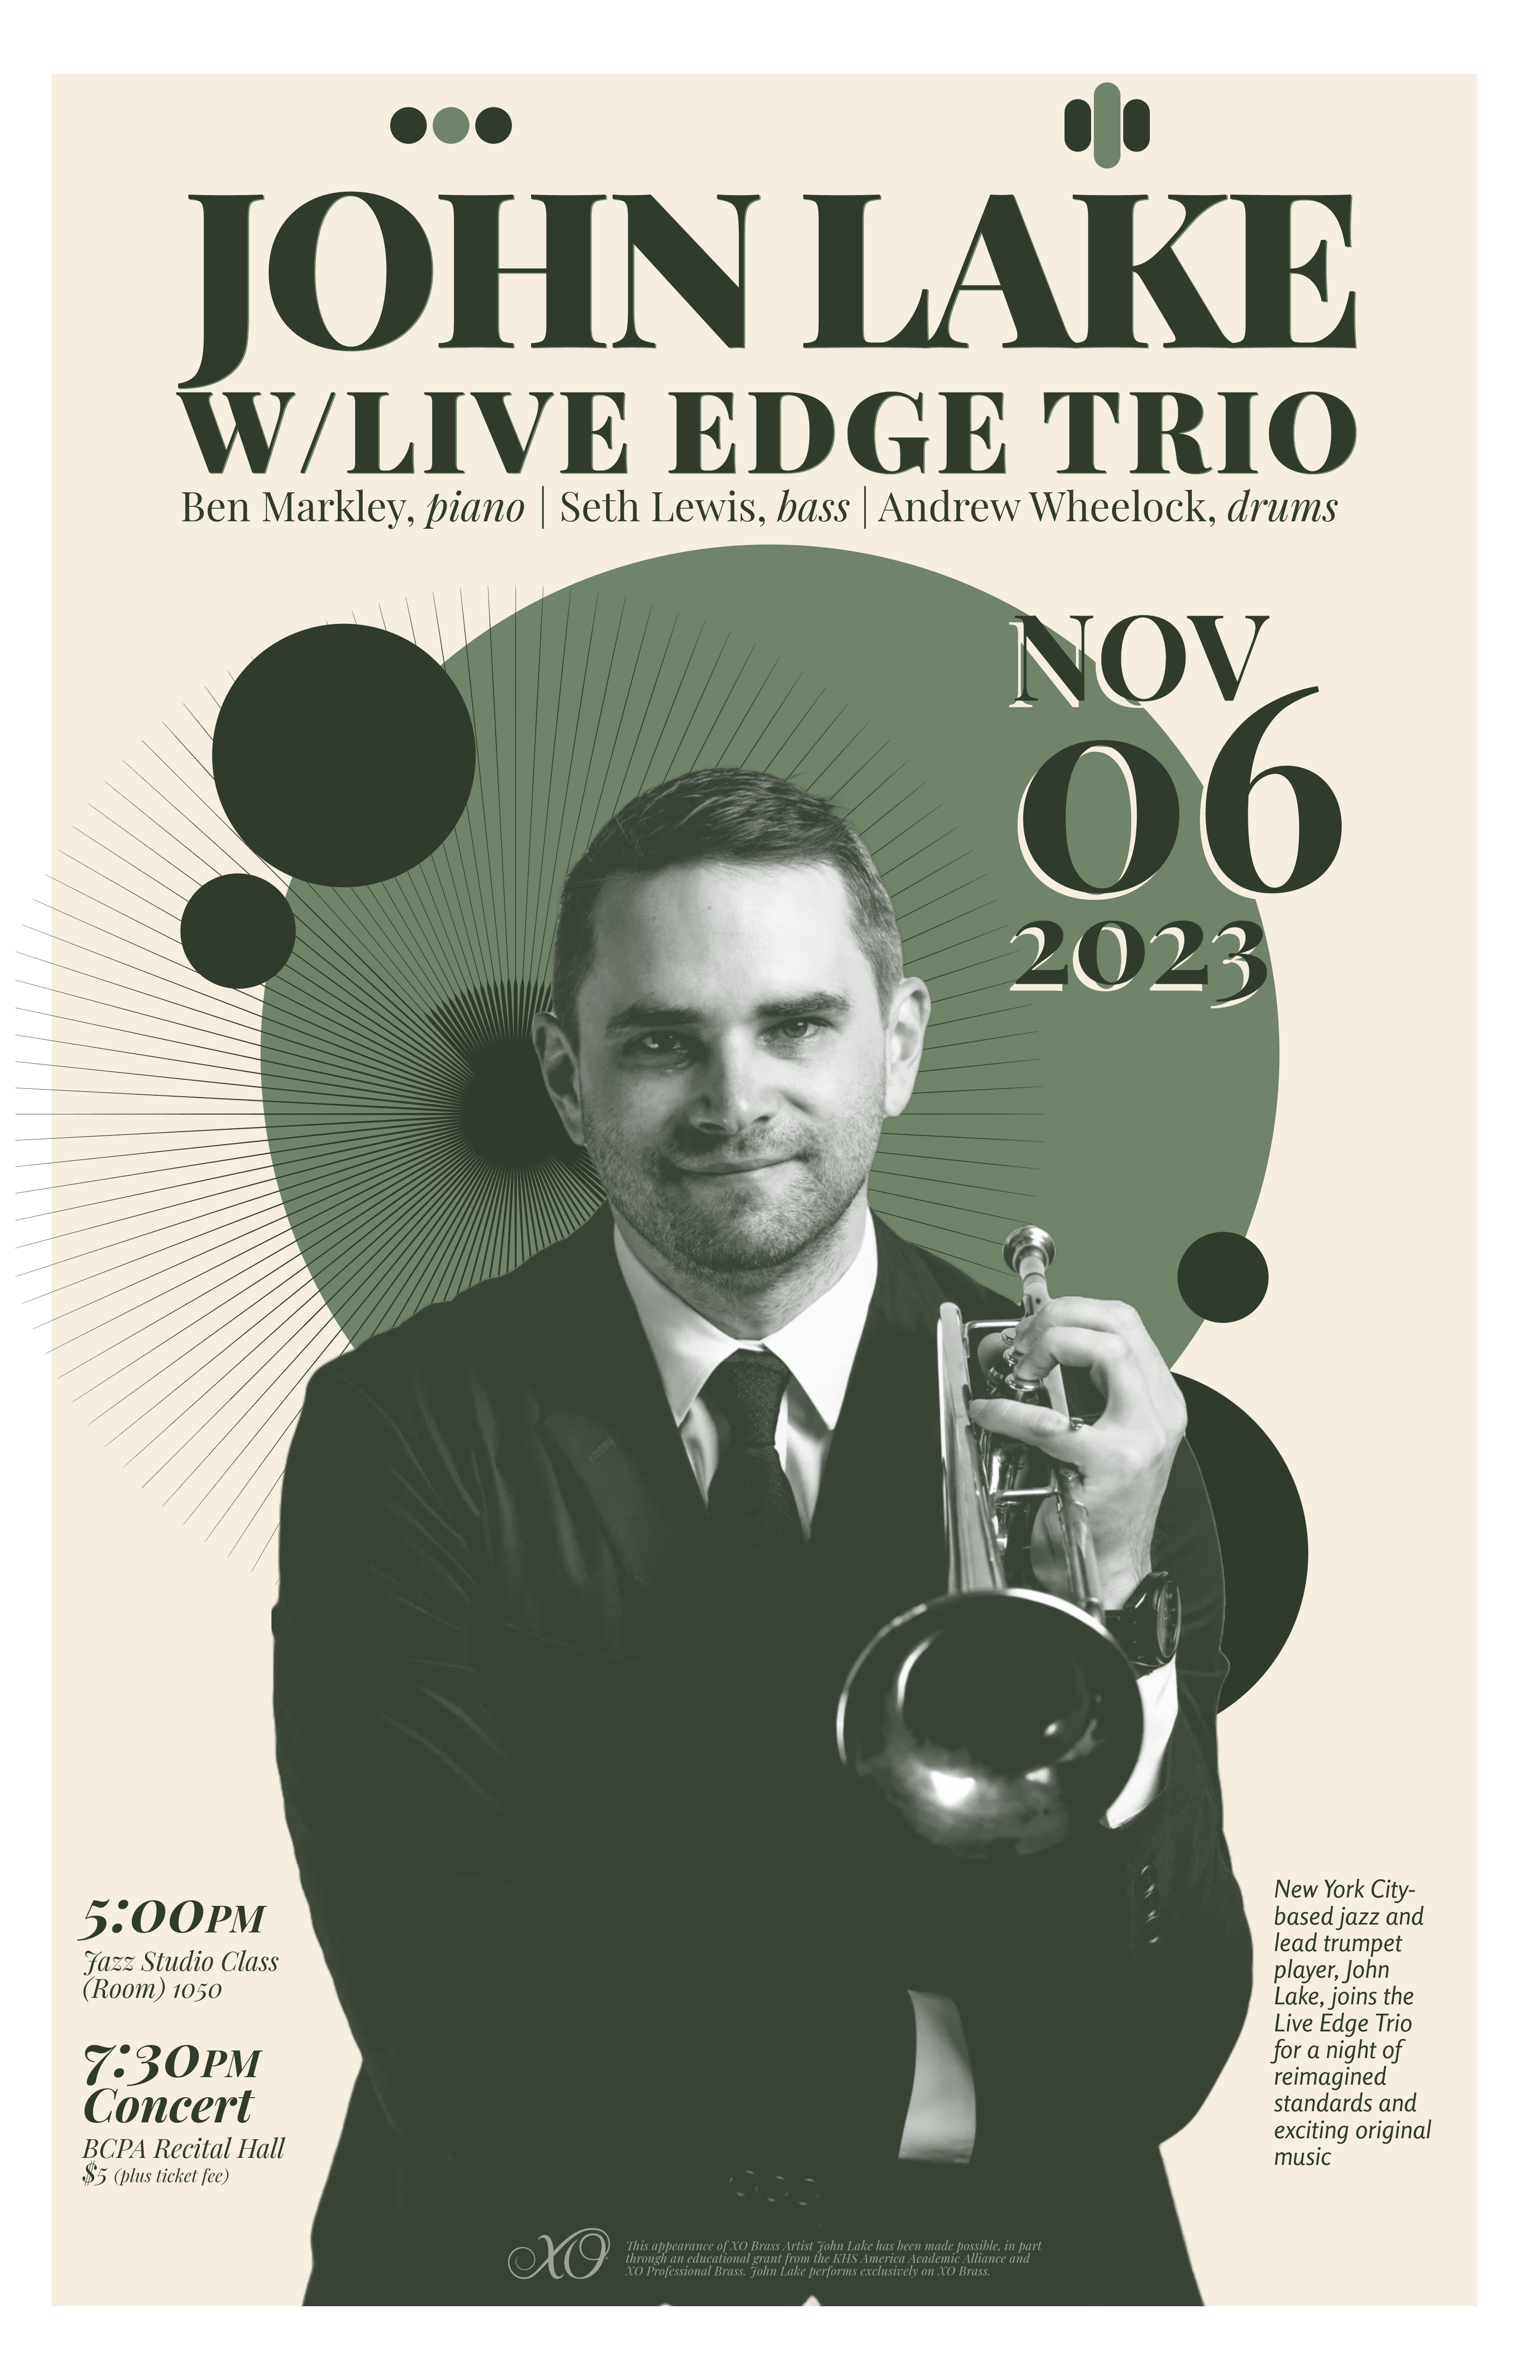 John Lake with The Live Edge Trio